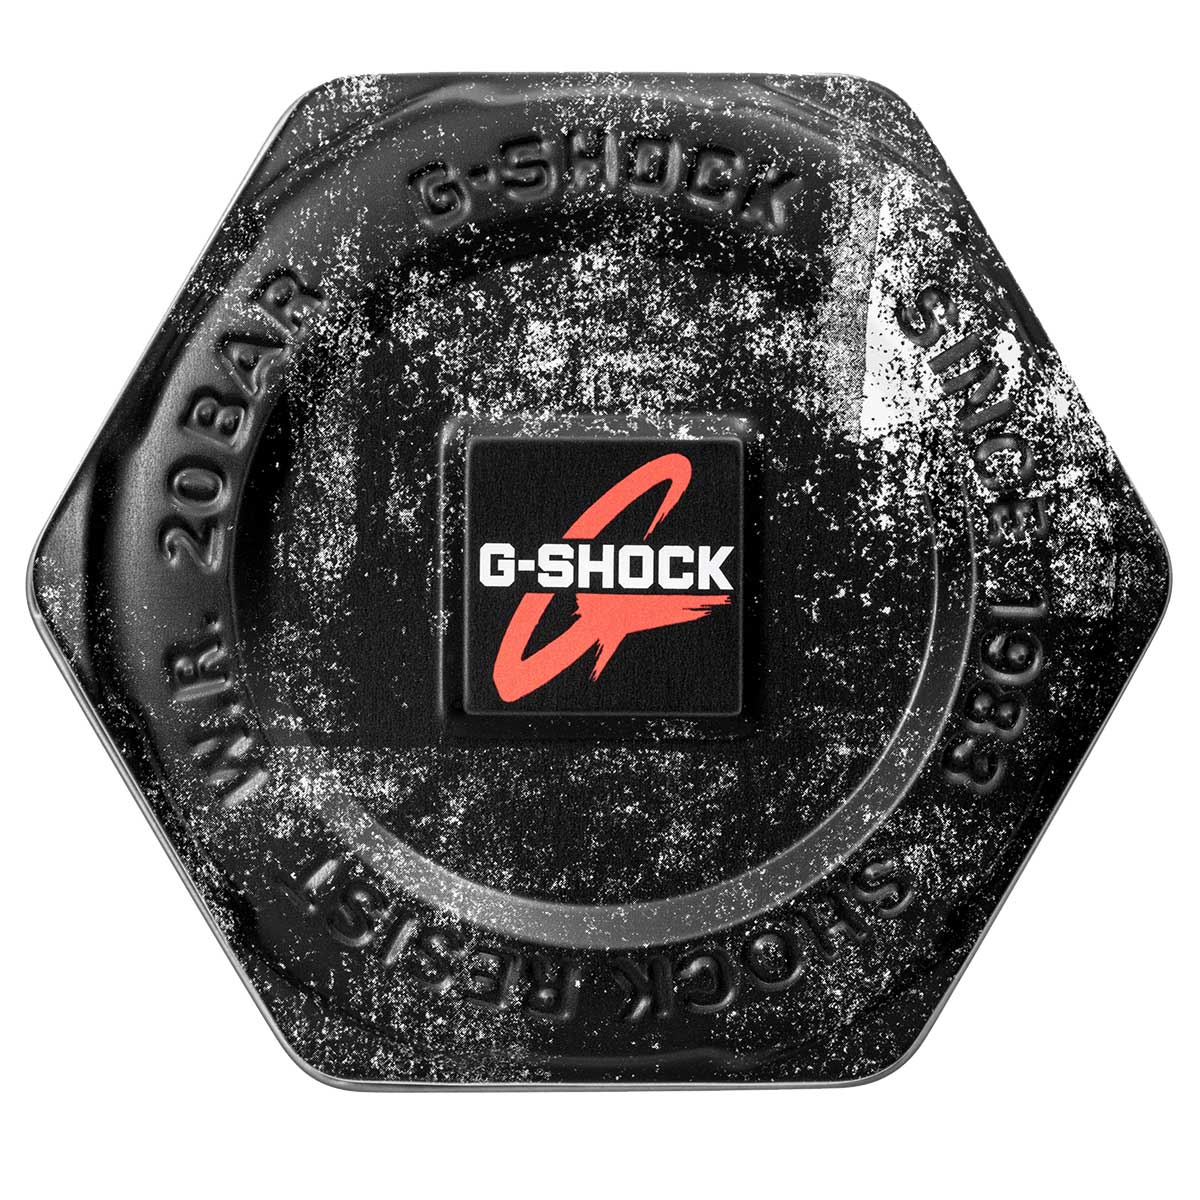 Zegarek Casio G-Shock Original GA-100 -1A4ER